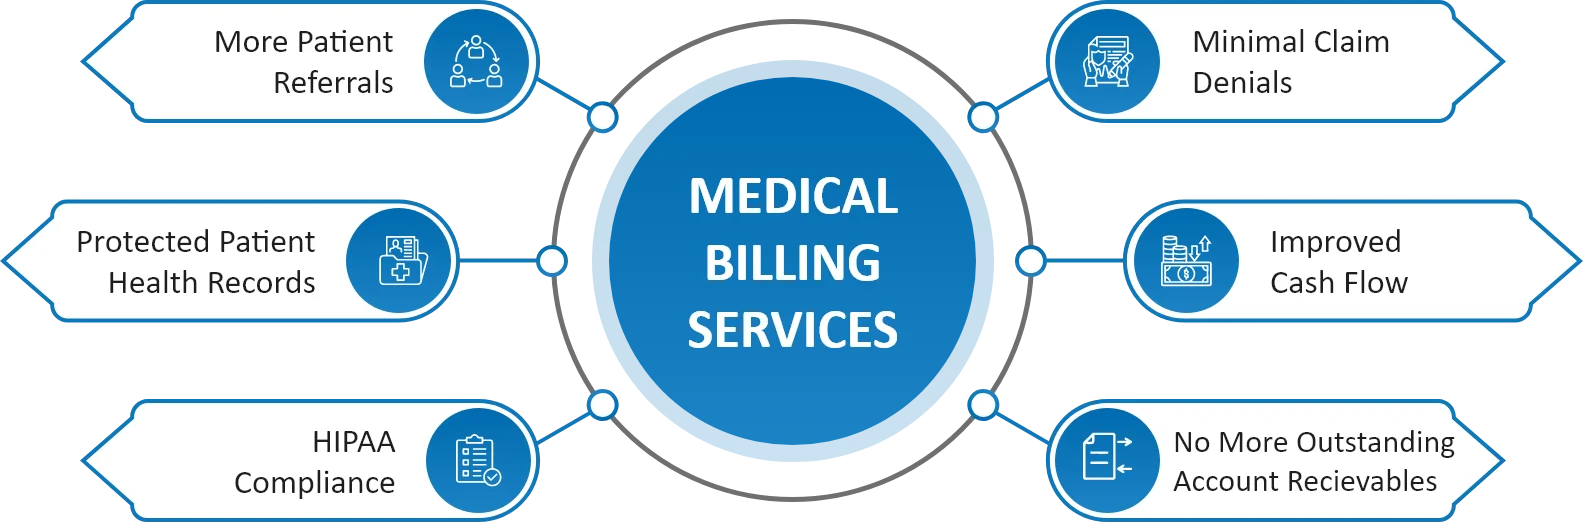 Medical Billing Image